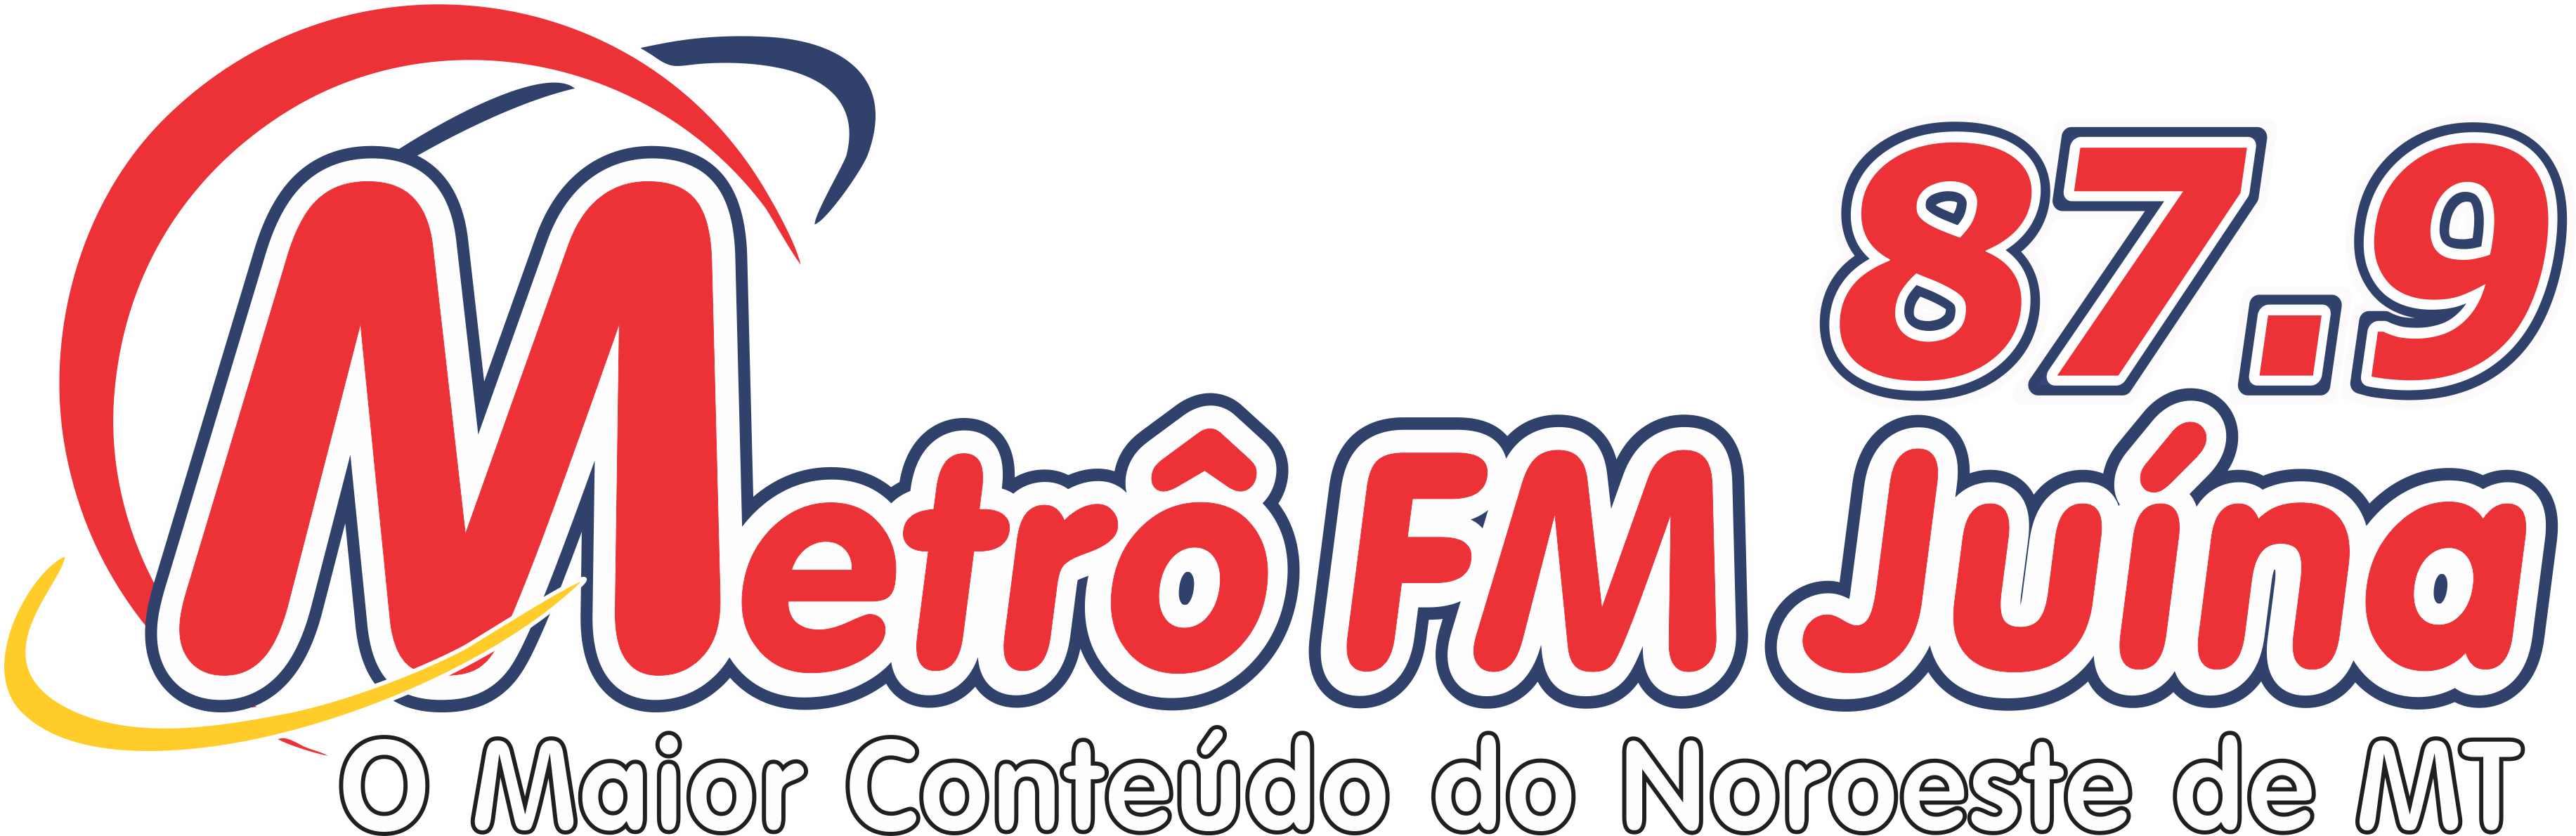 (c) Metrofmjuina.com.br